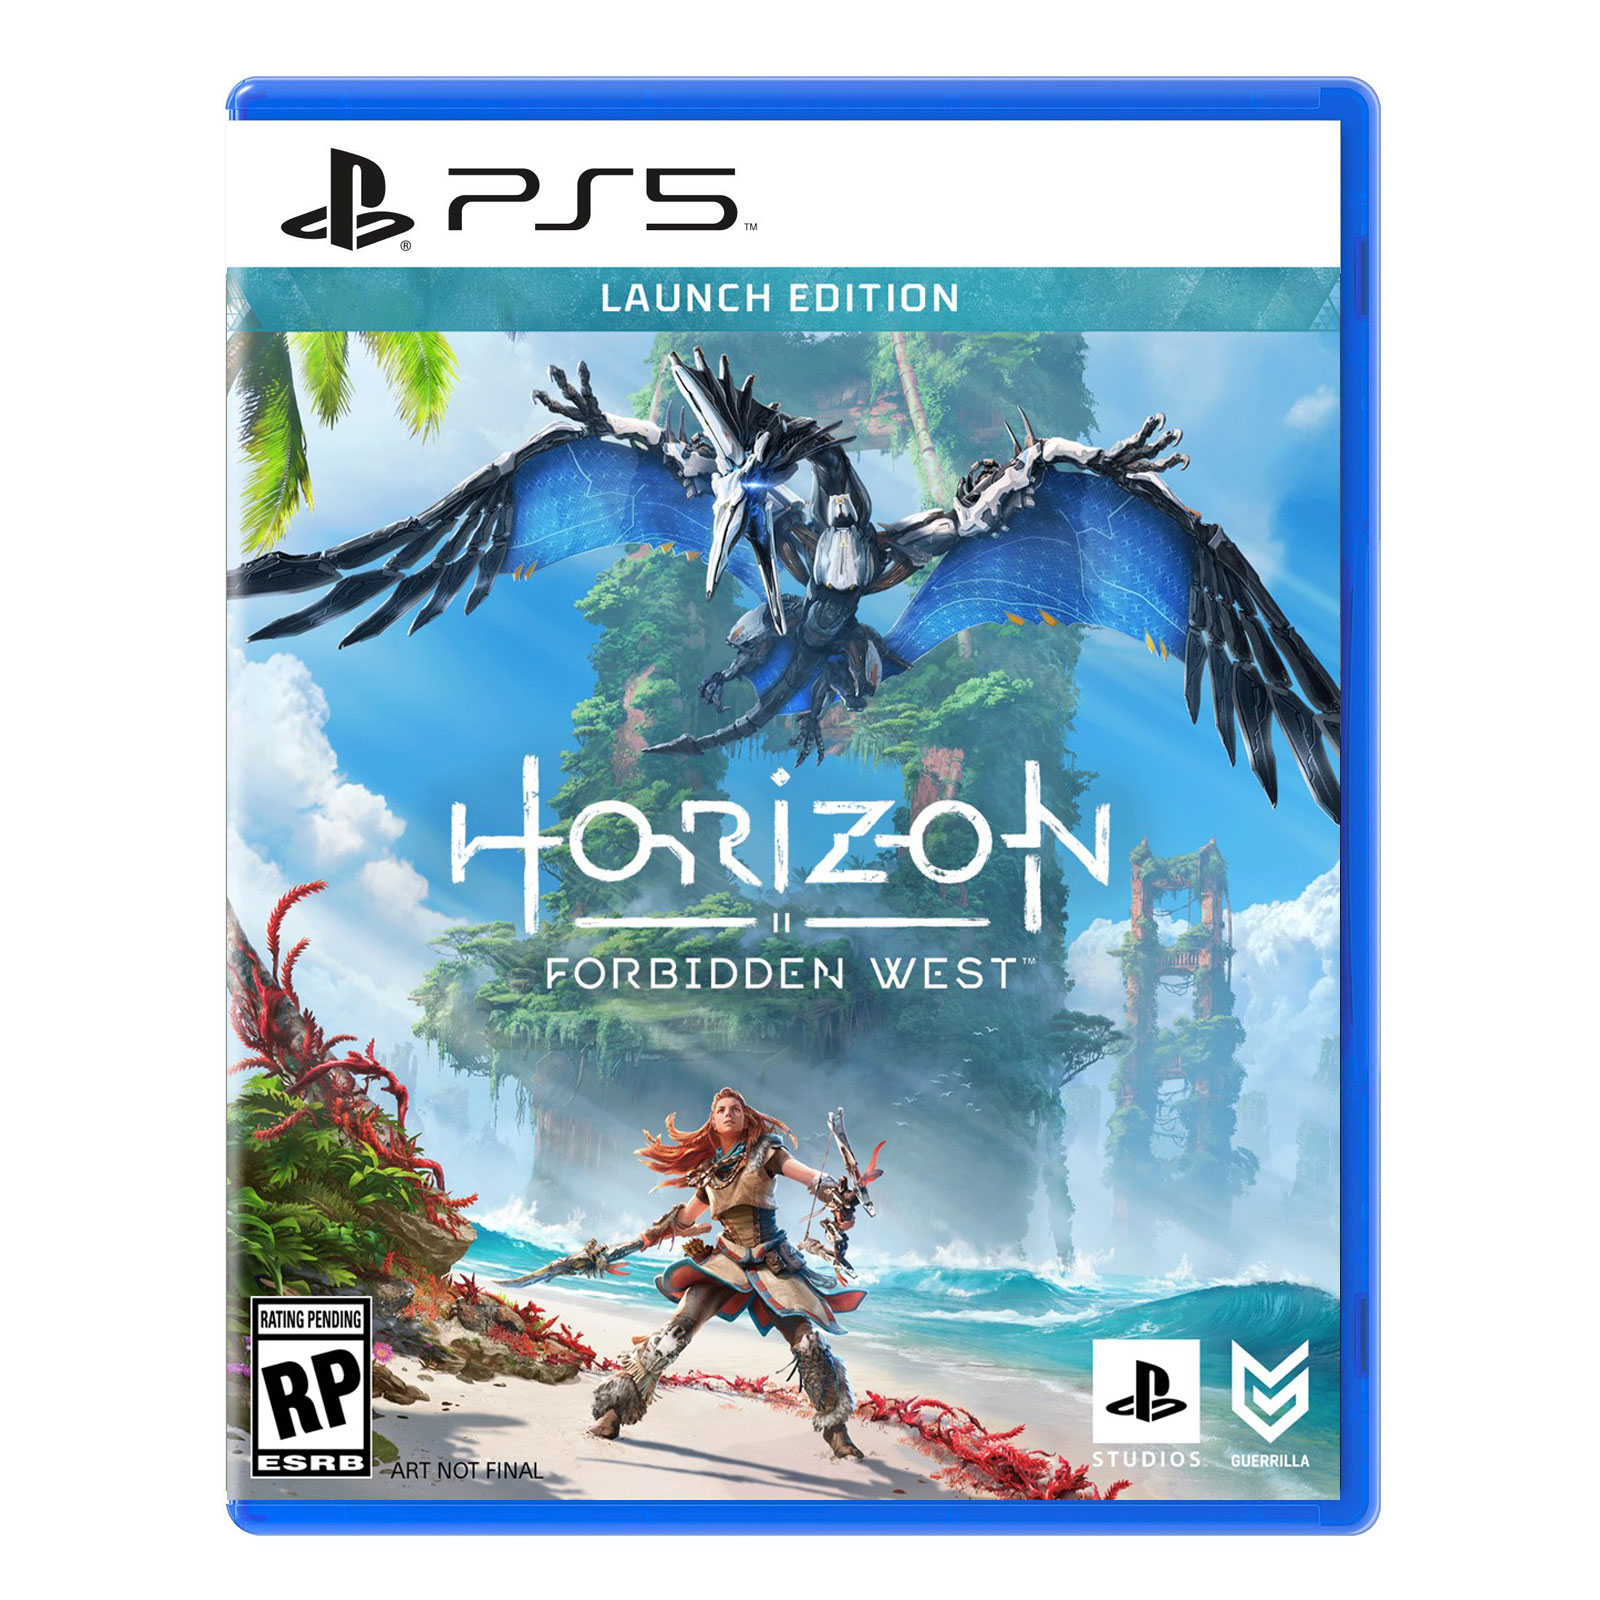 نکته خرید - قیمت روز بازی Horizon Forbidden West مخصوص PS5 خرید